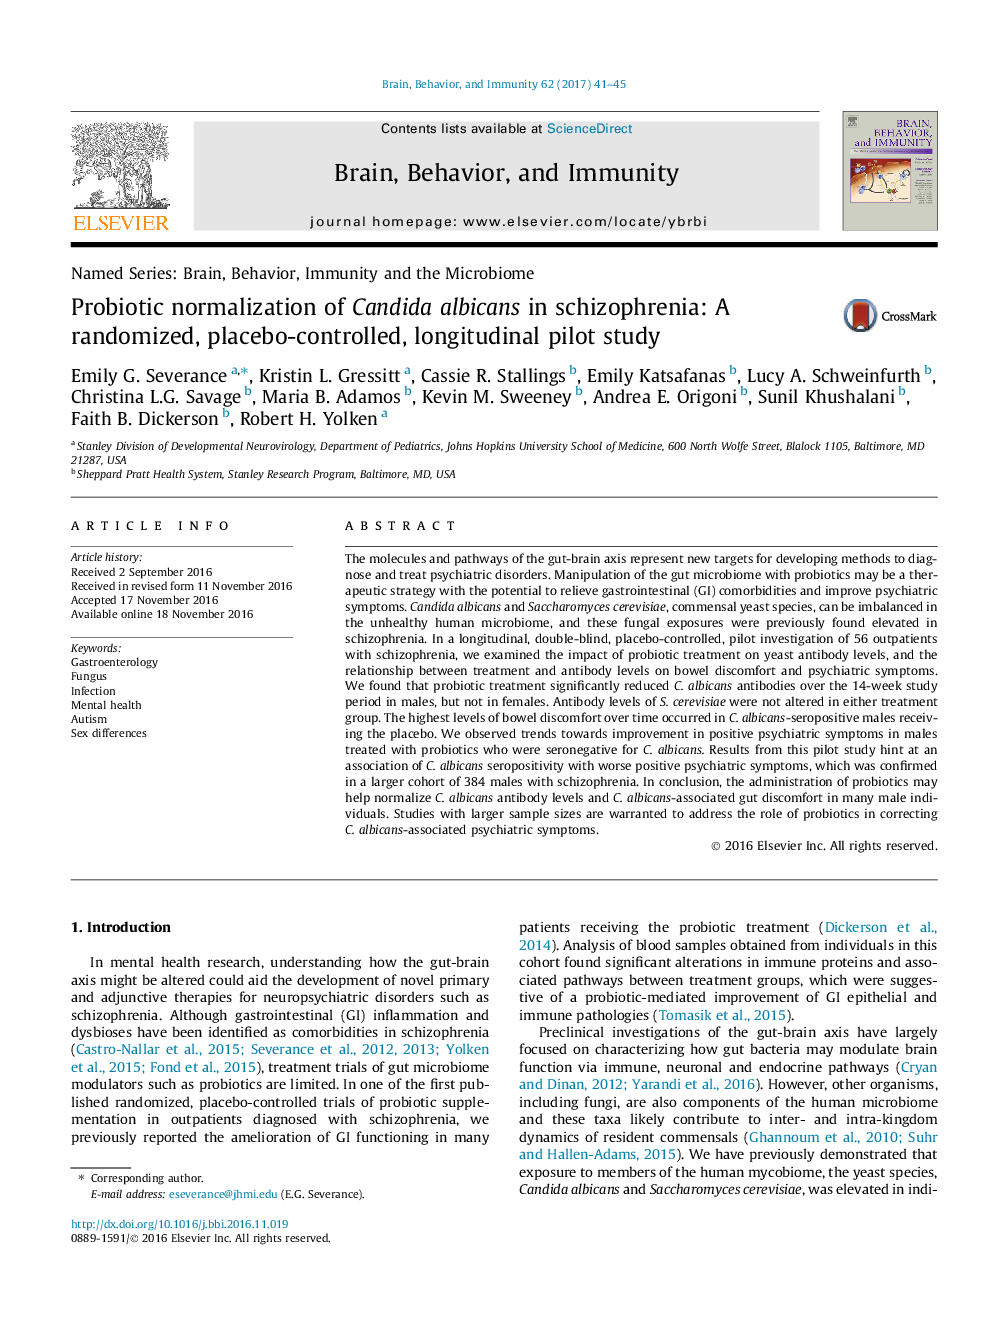 نرمال سازی پروبیوتیک کاندیدا آلبیکنس در اسکیزوفرنی: یک مطالعه آزمایشی تصادفی، کنترل شده با پلاسبو، طولی 